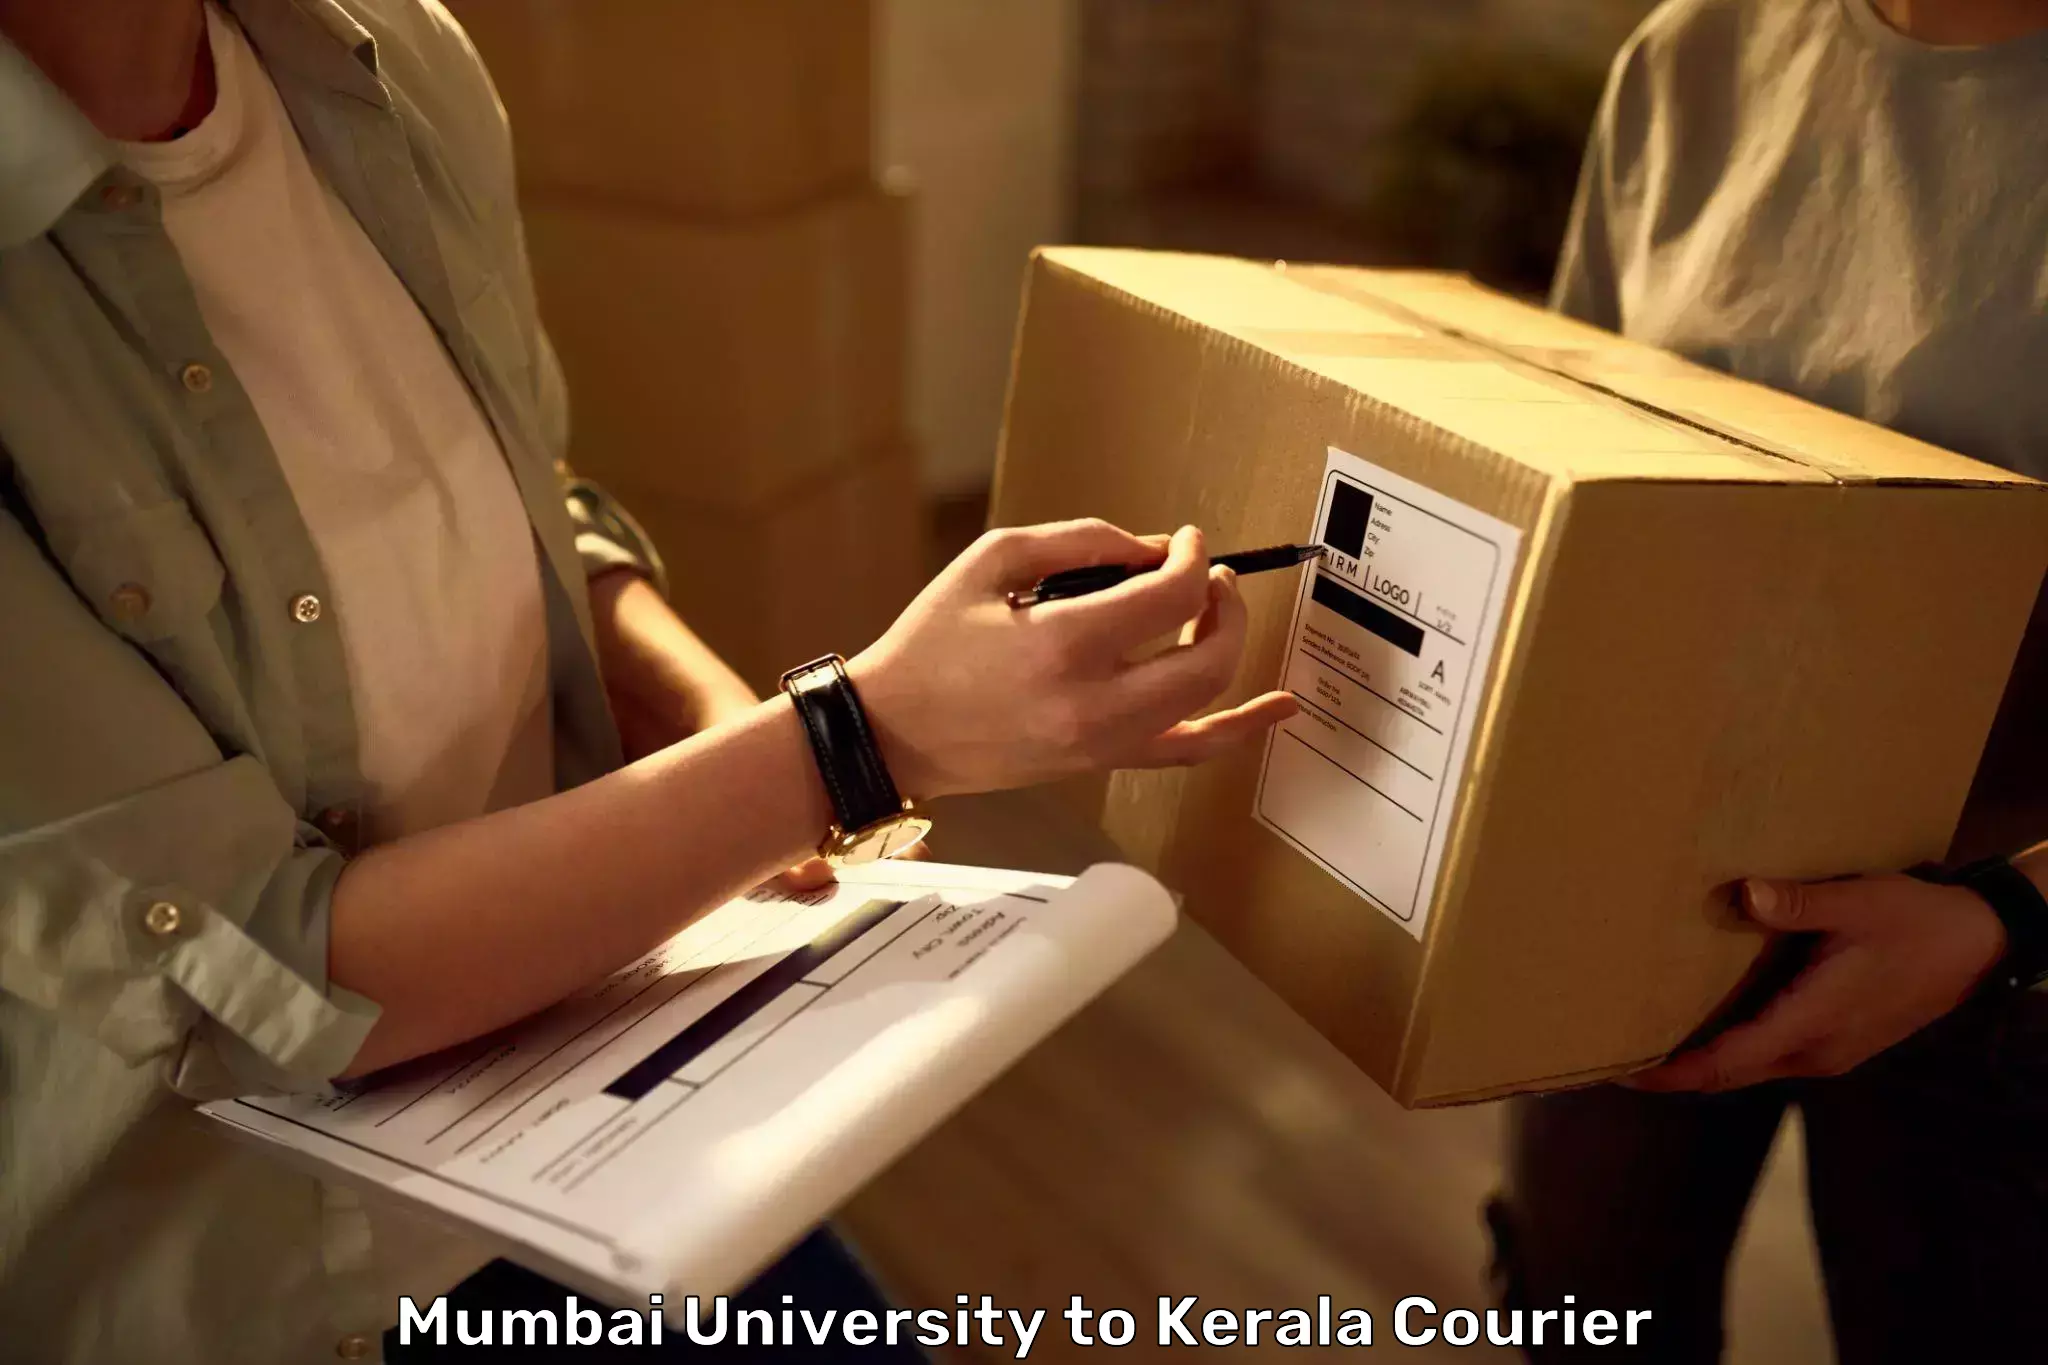 Electronic items luggage shipping Mumbai University to Mahe